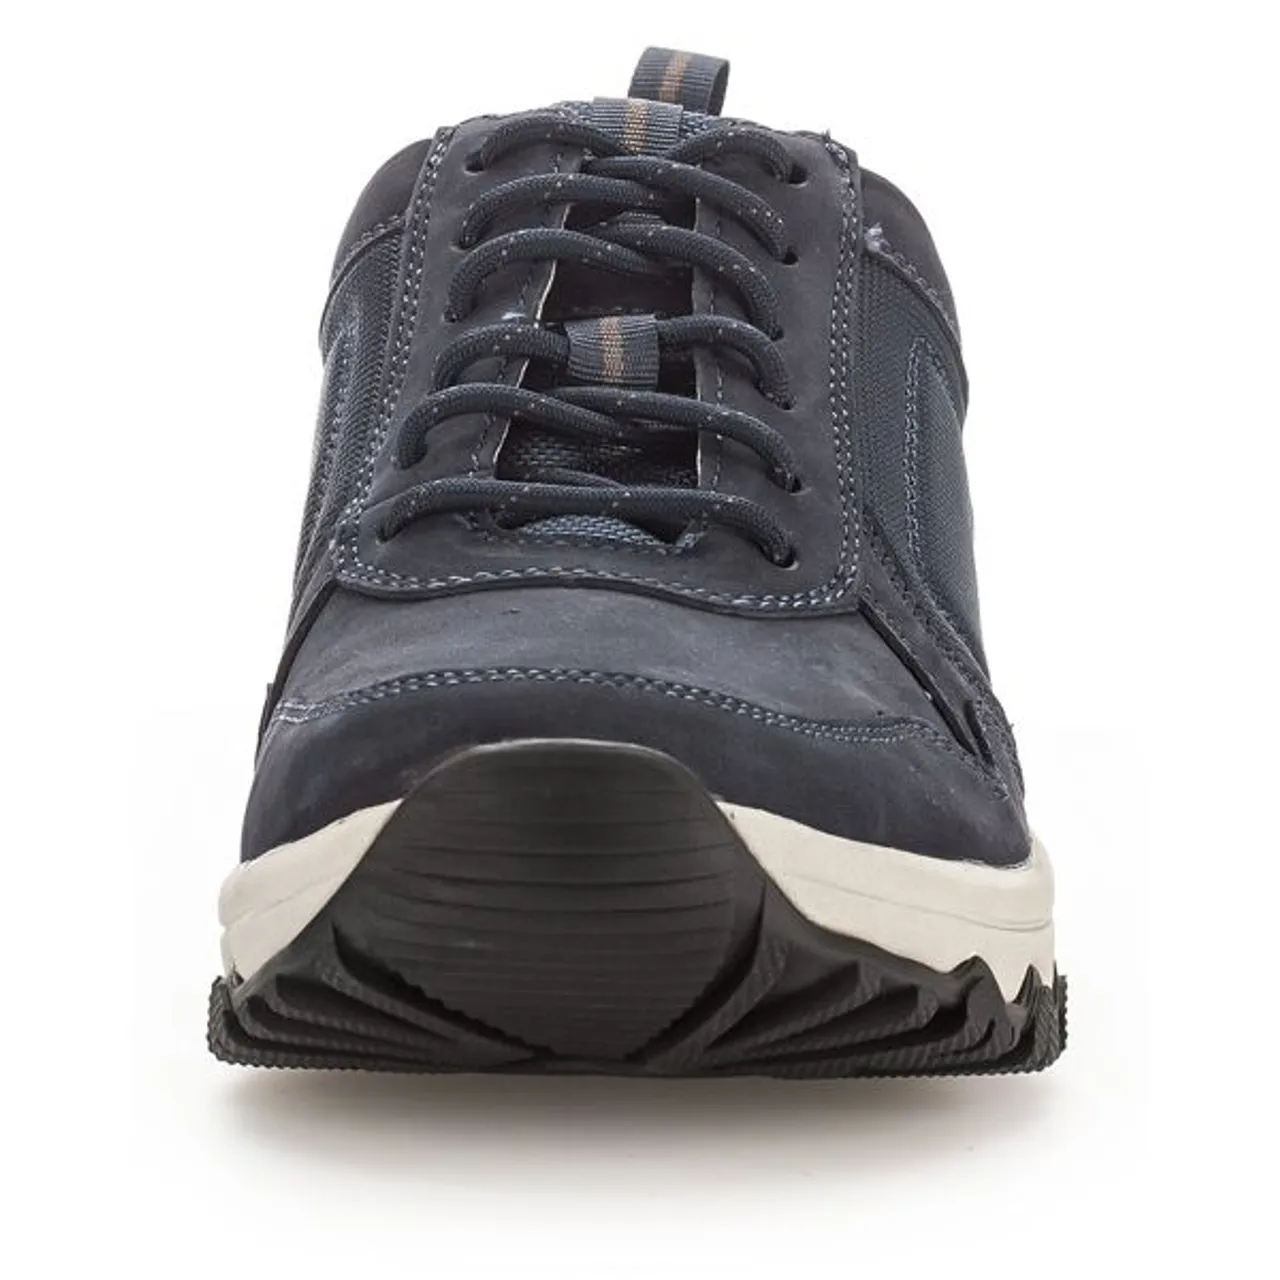 Sneaker GABOR ROLLINGSOFT Gr. 9,5 (44), blau (dunkelblau) Herren Schuhe Stoffschuhe mit Anziehlasche, Weite G, Freizeitschuh, Halbschuh, Schnürschuh